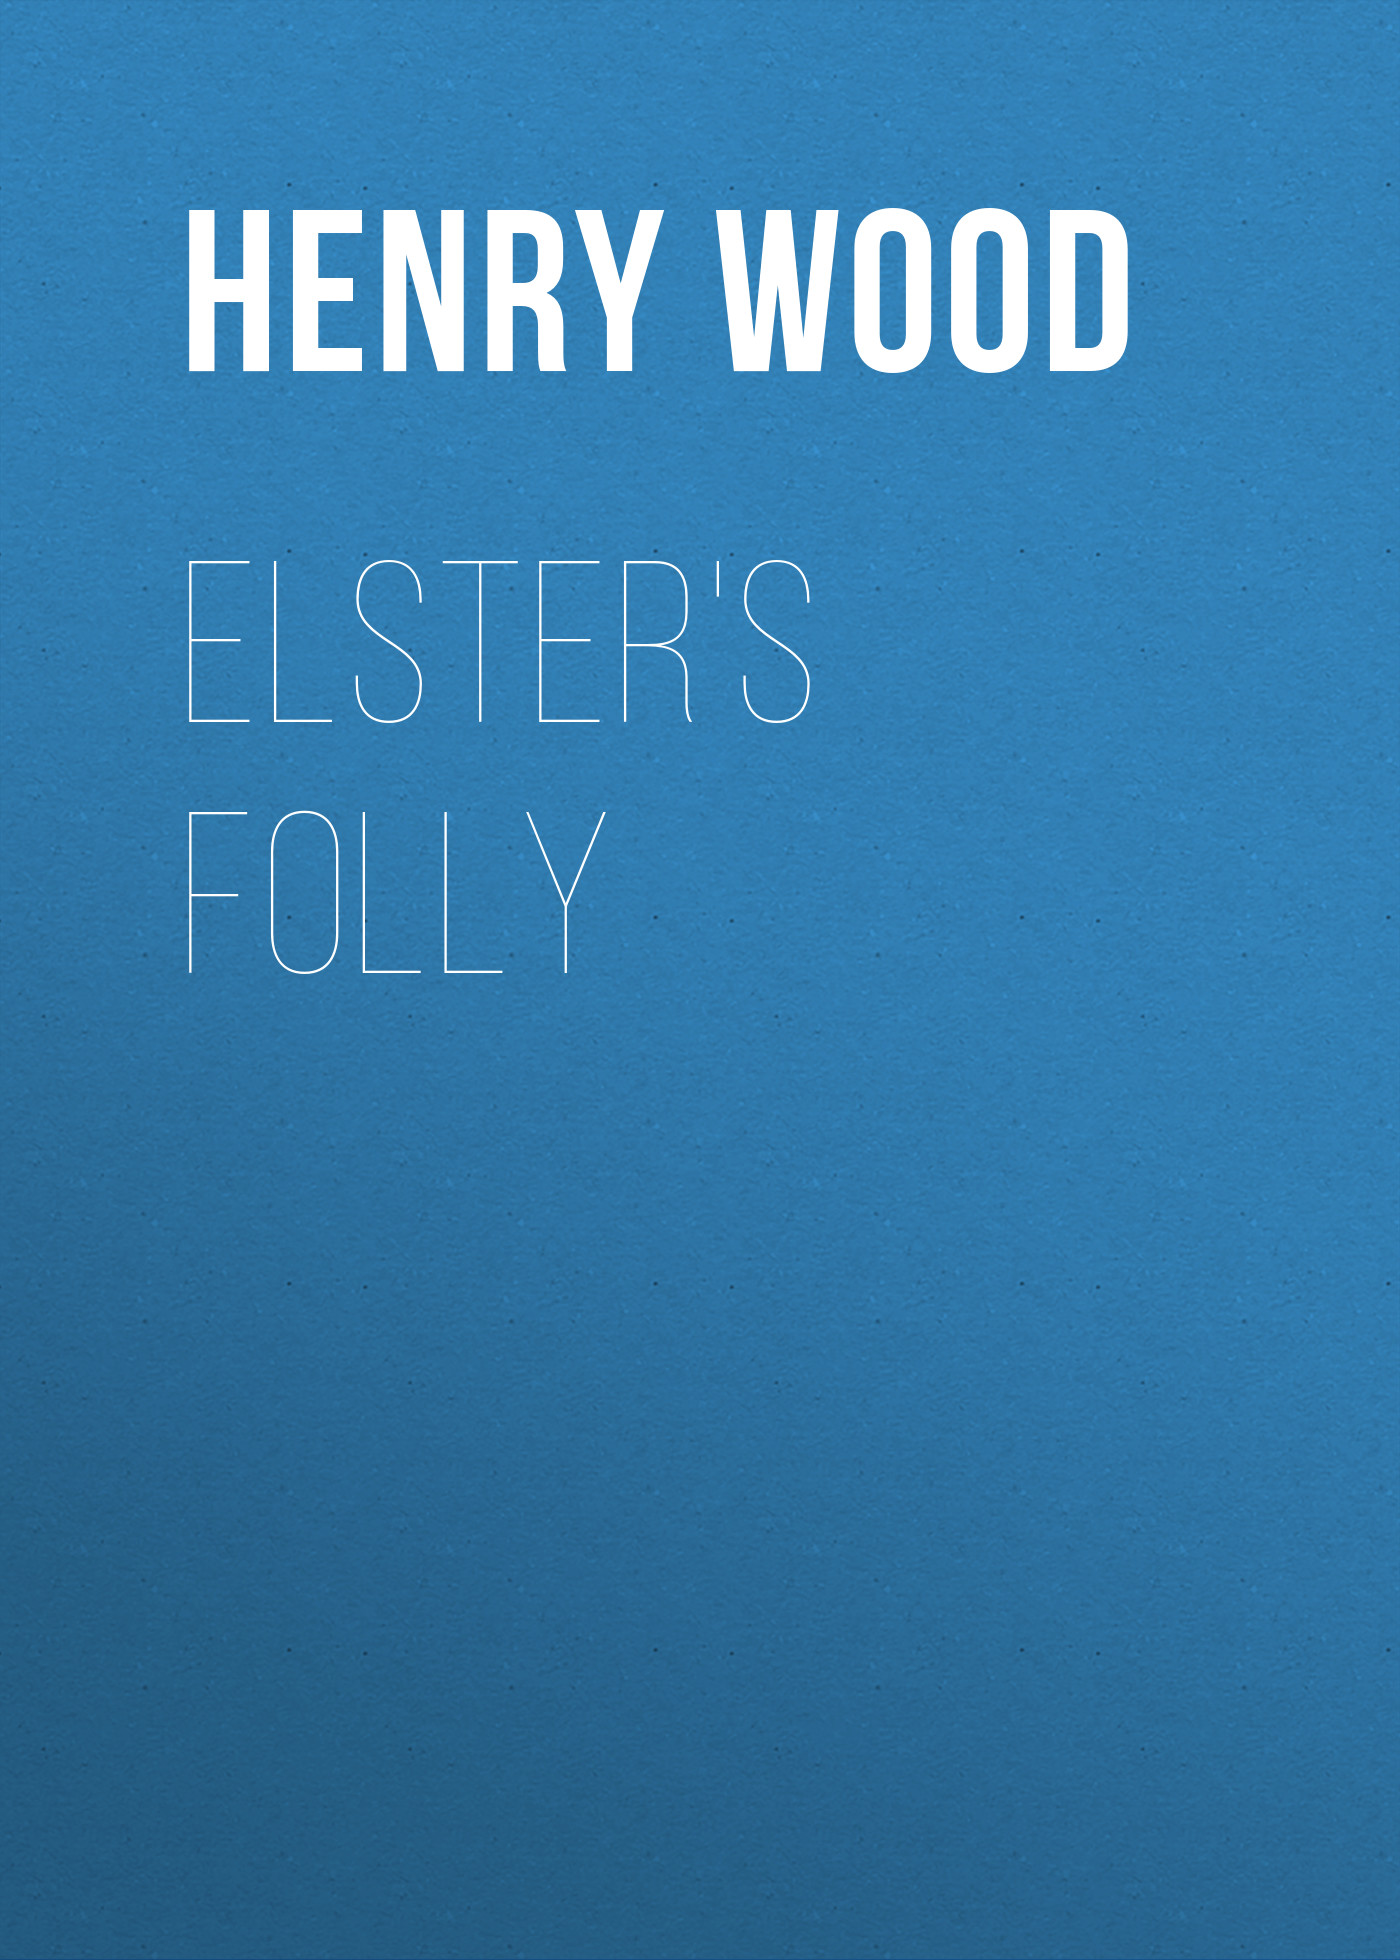 Книга Elster's Folly из серии , созданная Henry Wood, может относится к жанру Зарубежная классика, Литература 19 века, Зарубежная старинная литература. Стоимость электронной книги Elster's Folly с идентификатором 35008169 составляет 0 руб.